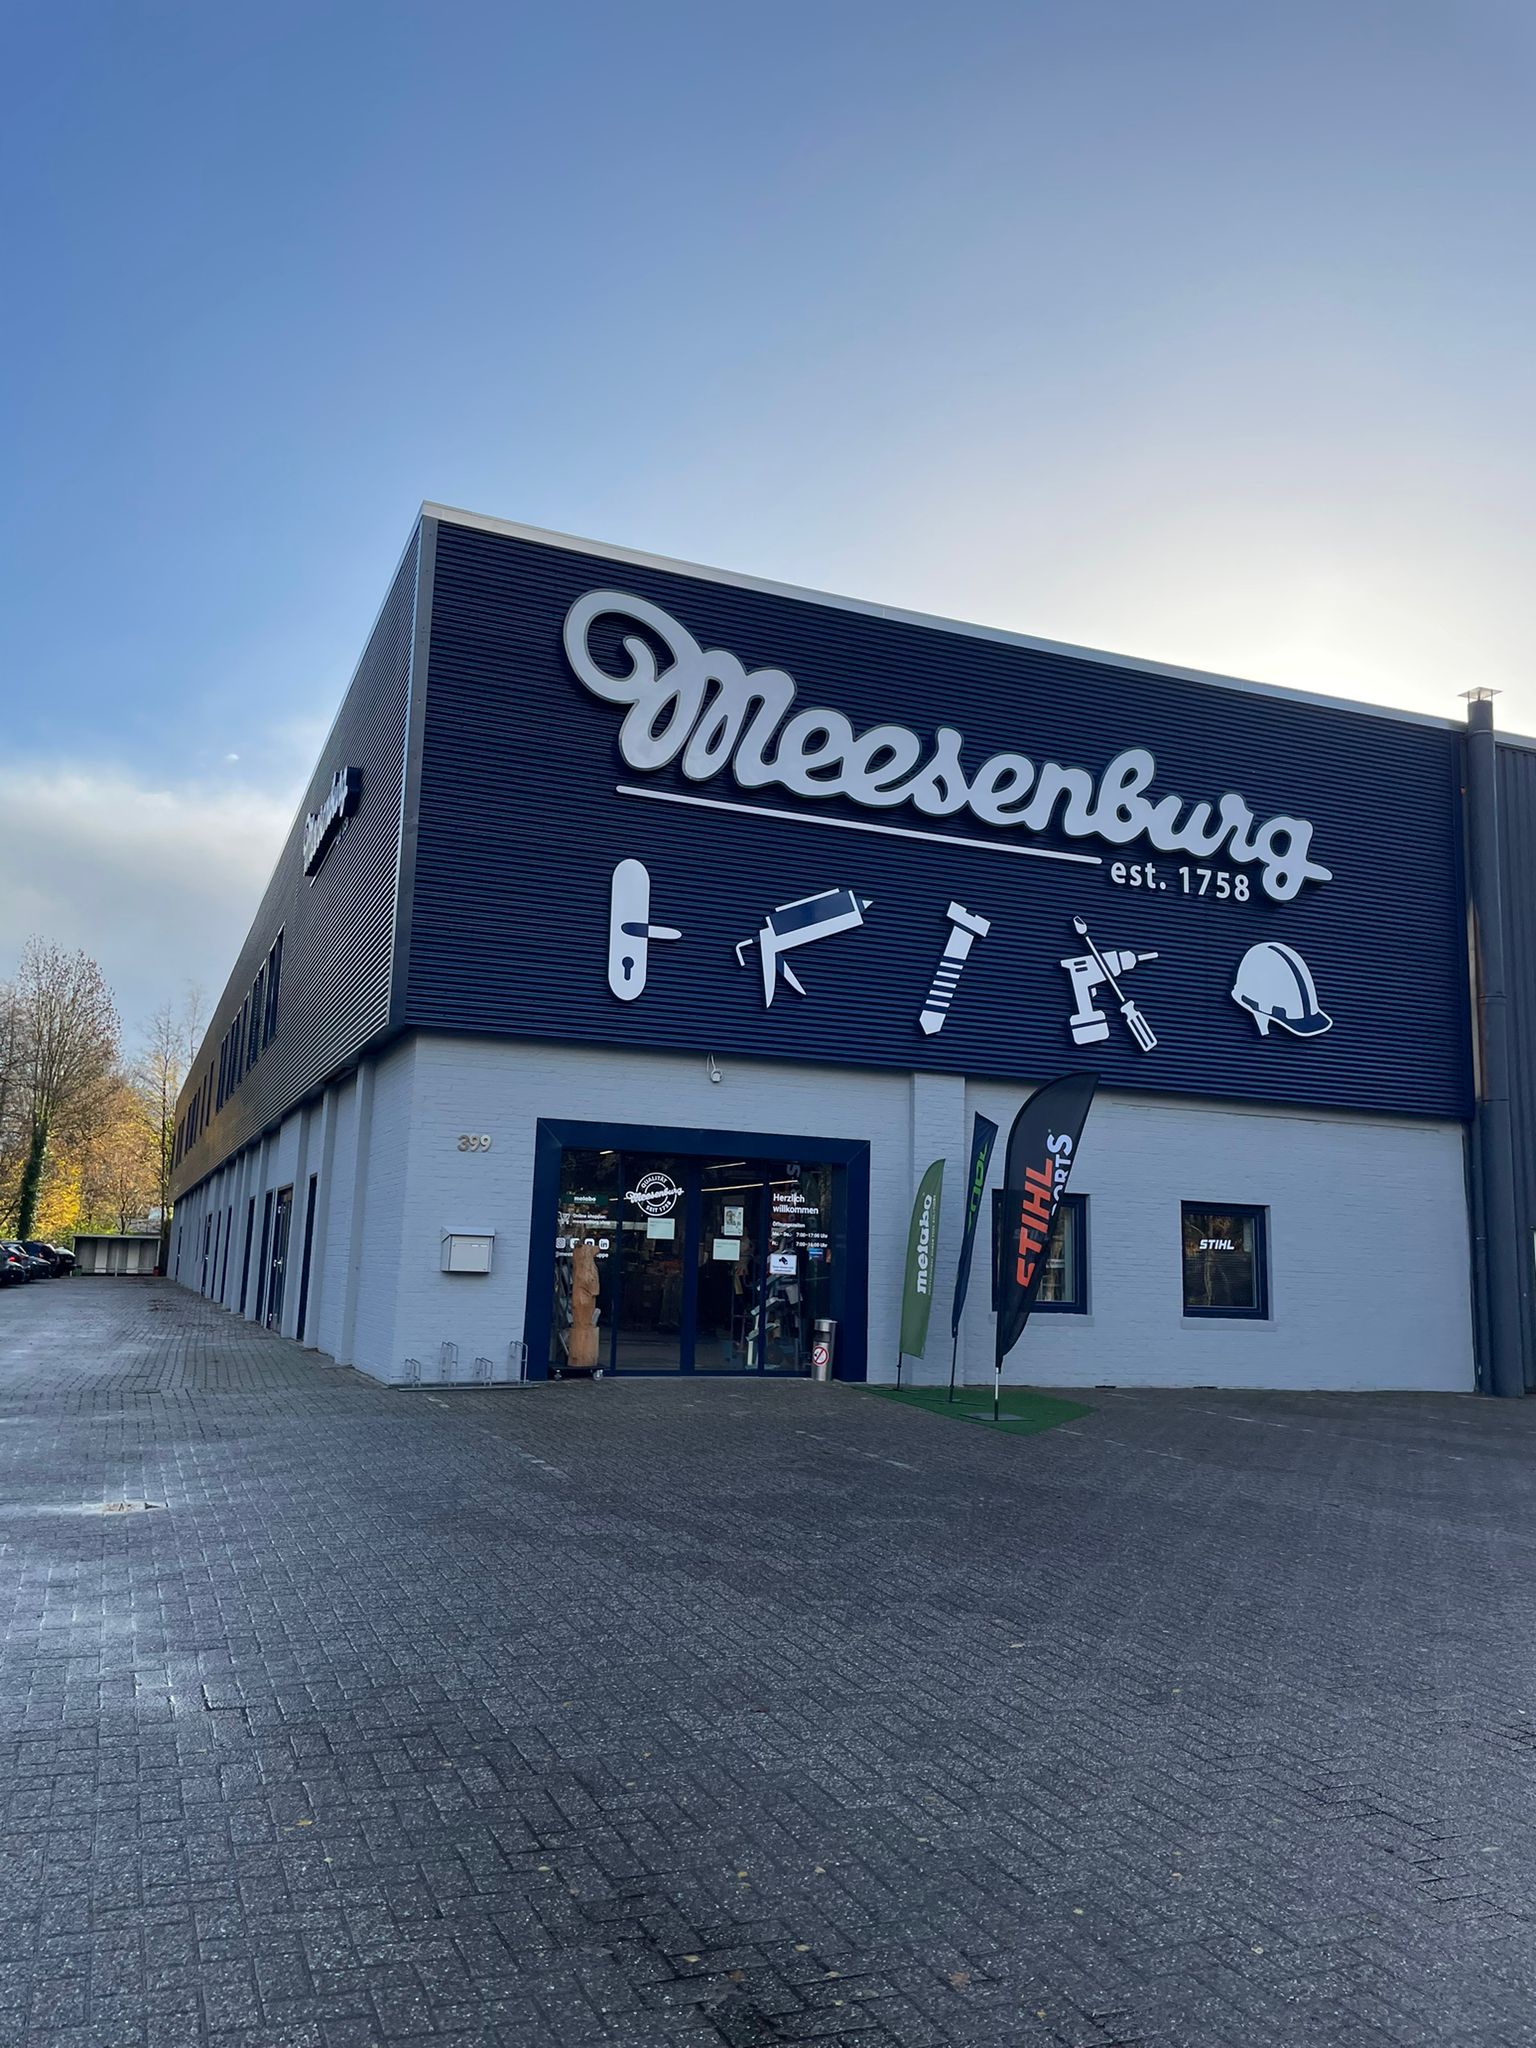 Bilder Meesenburg GmbH & Co. KG in Oldenburg